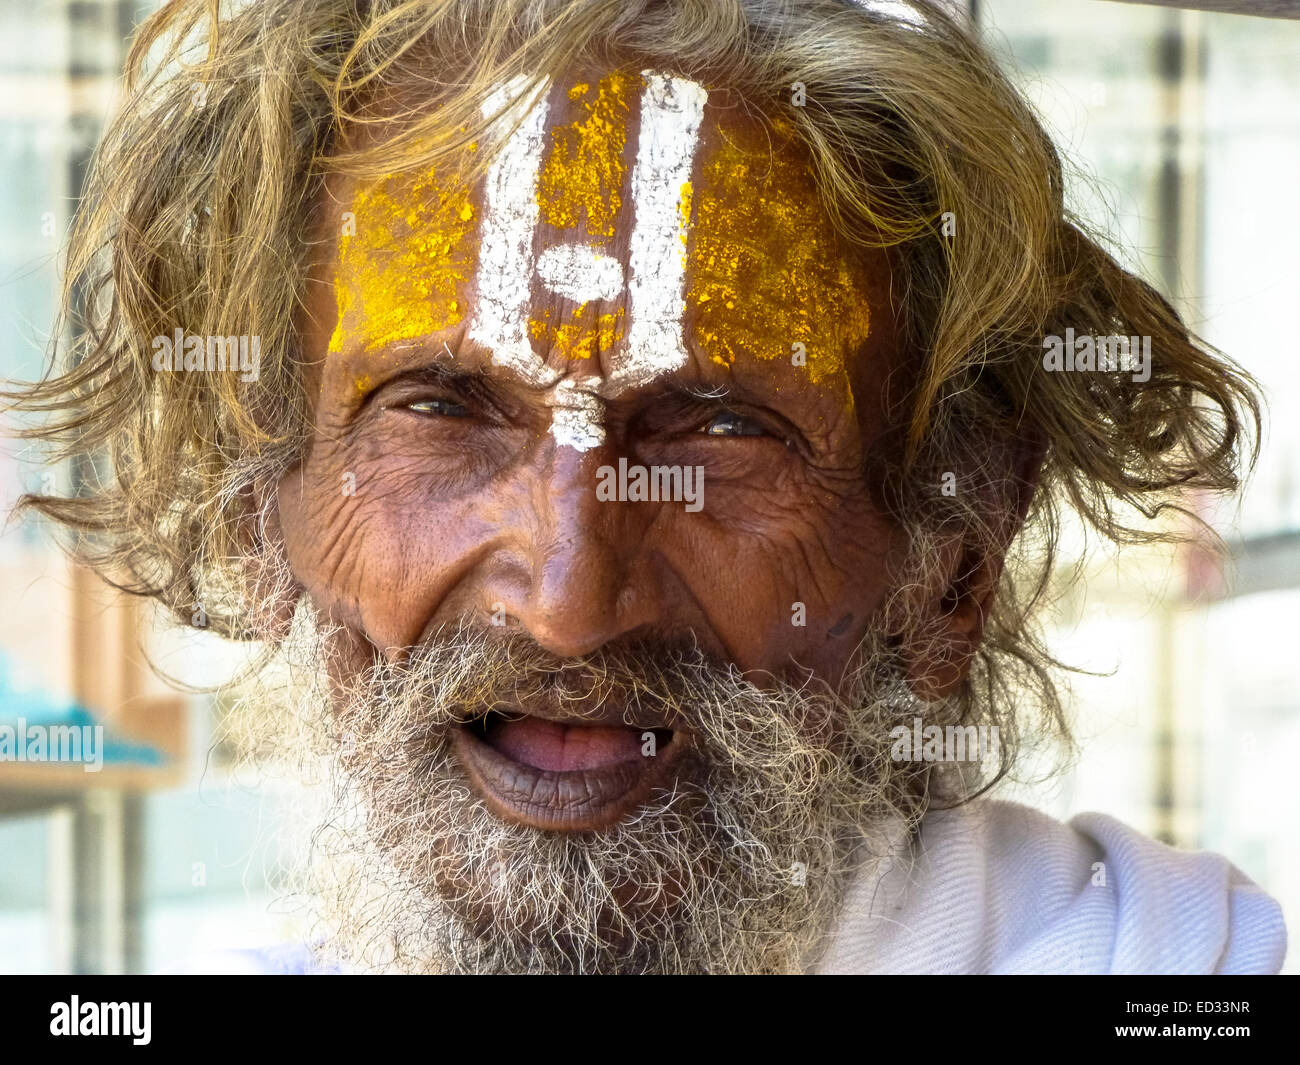 Ritratto di uomo santo in Gujarat india Foto Stock